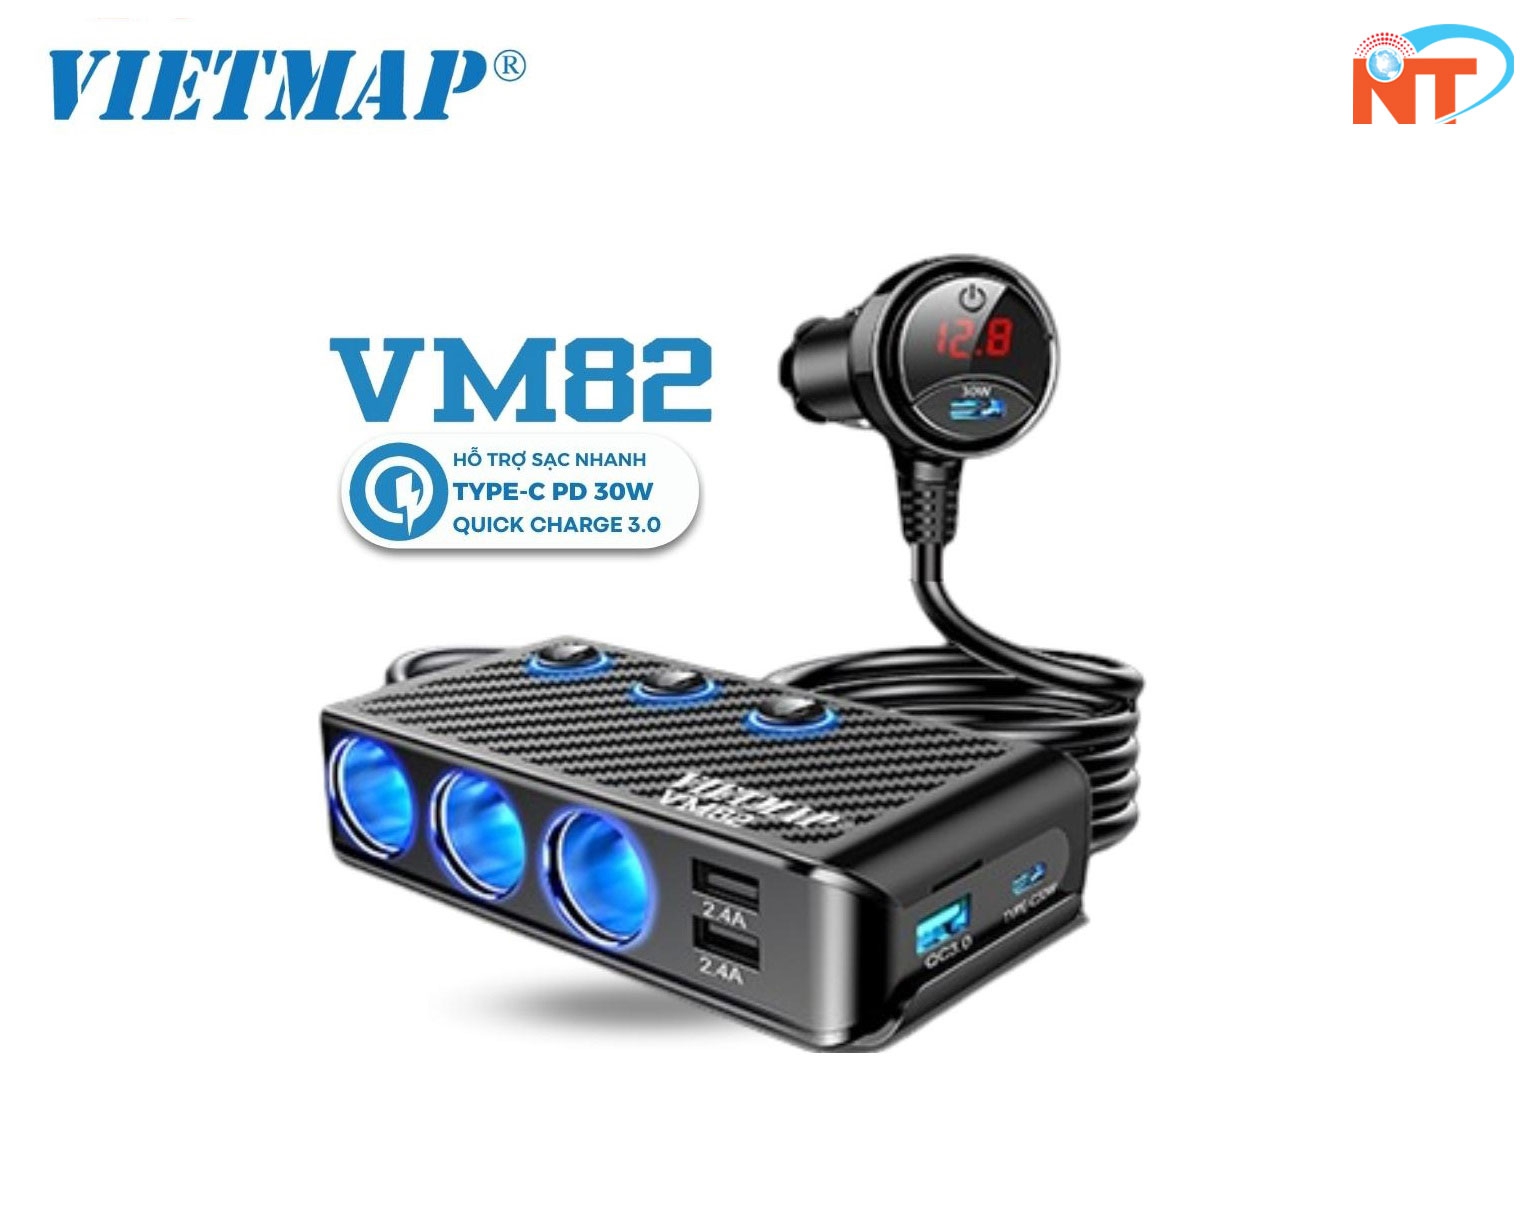 VIETMAP VM82 - Bộ chia sạc ô tô đa năng - Sạc nhanh Type-C PD 30W và QC 3.0 - Hàng chính hãng